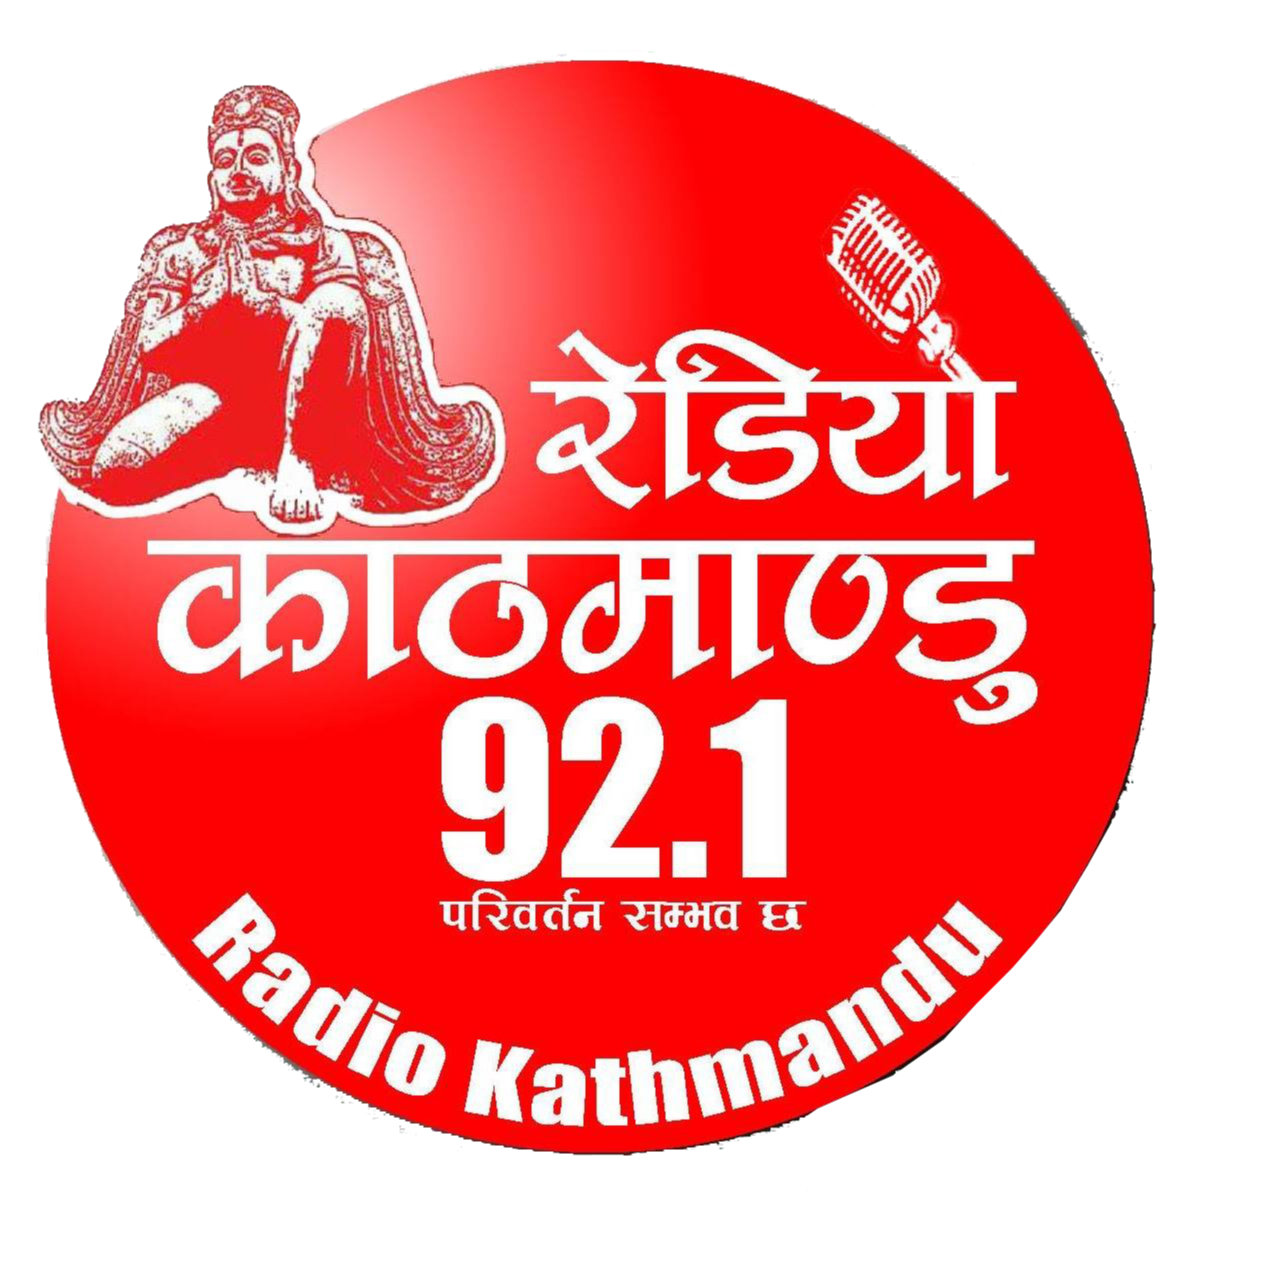 Radio Kathmandu